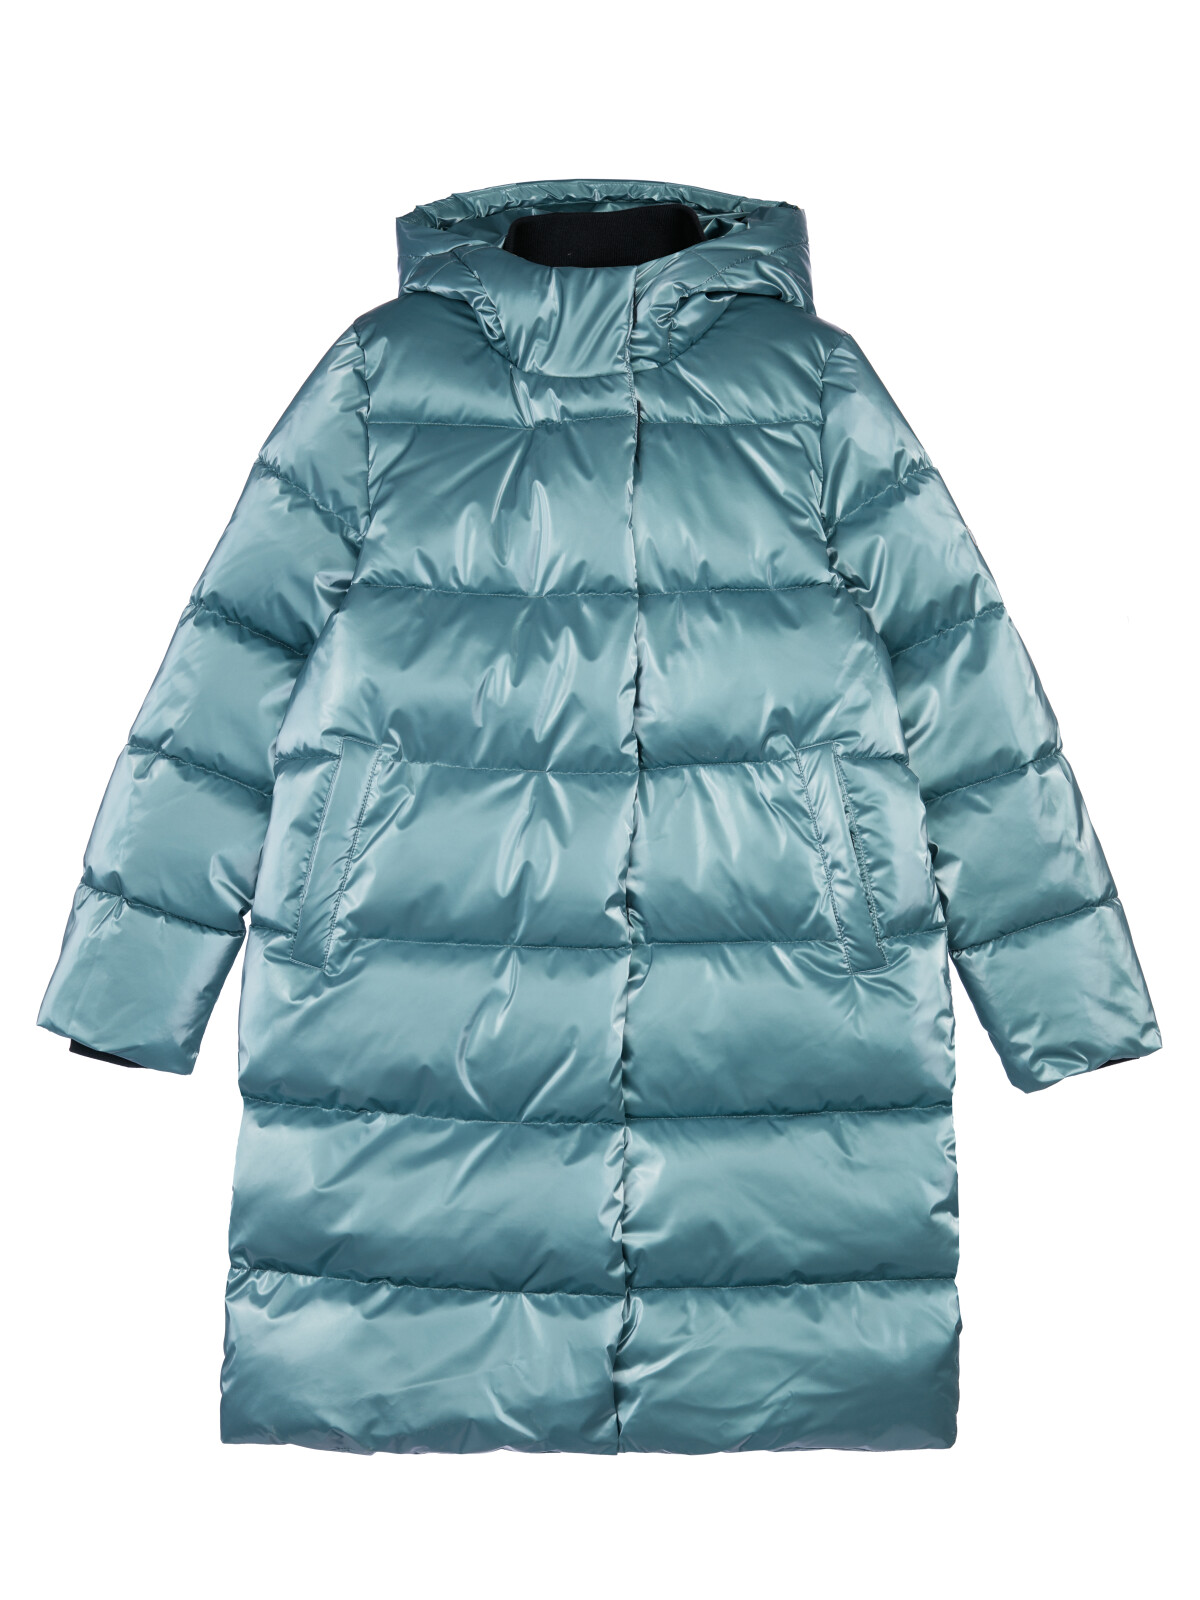 Пальто текстильное с полиуретановым покрытием для девочек PlayToday, темно-зеленый, 164